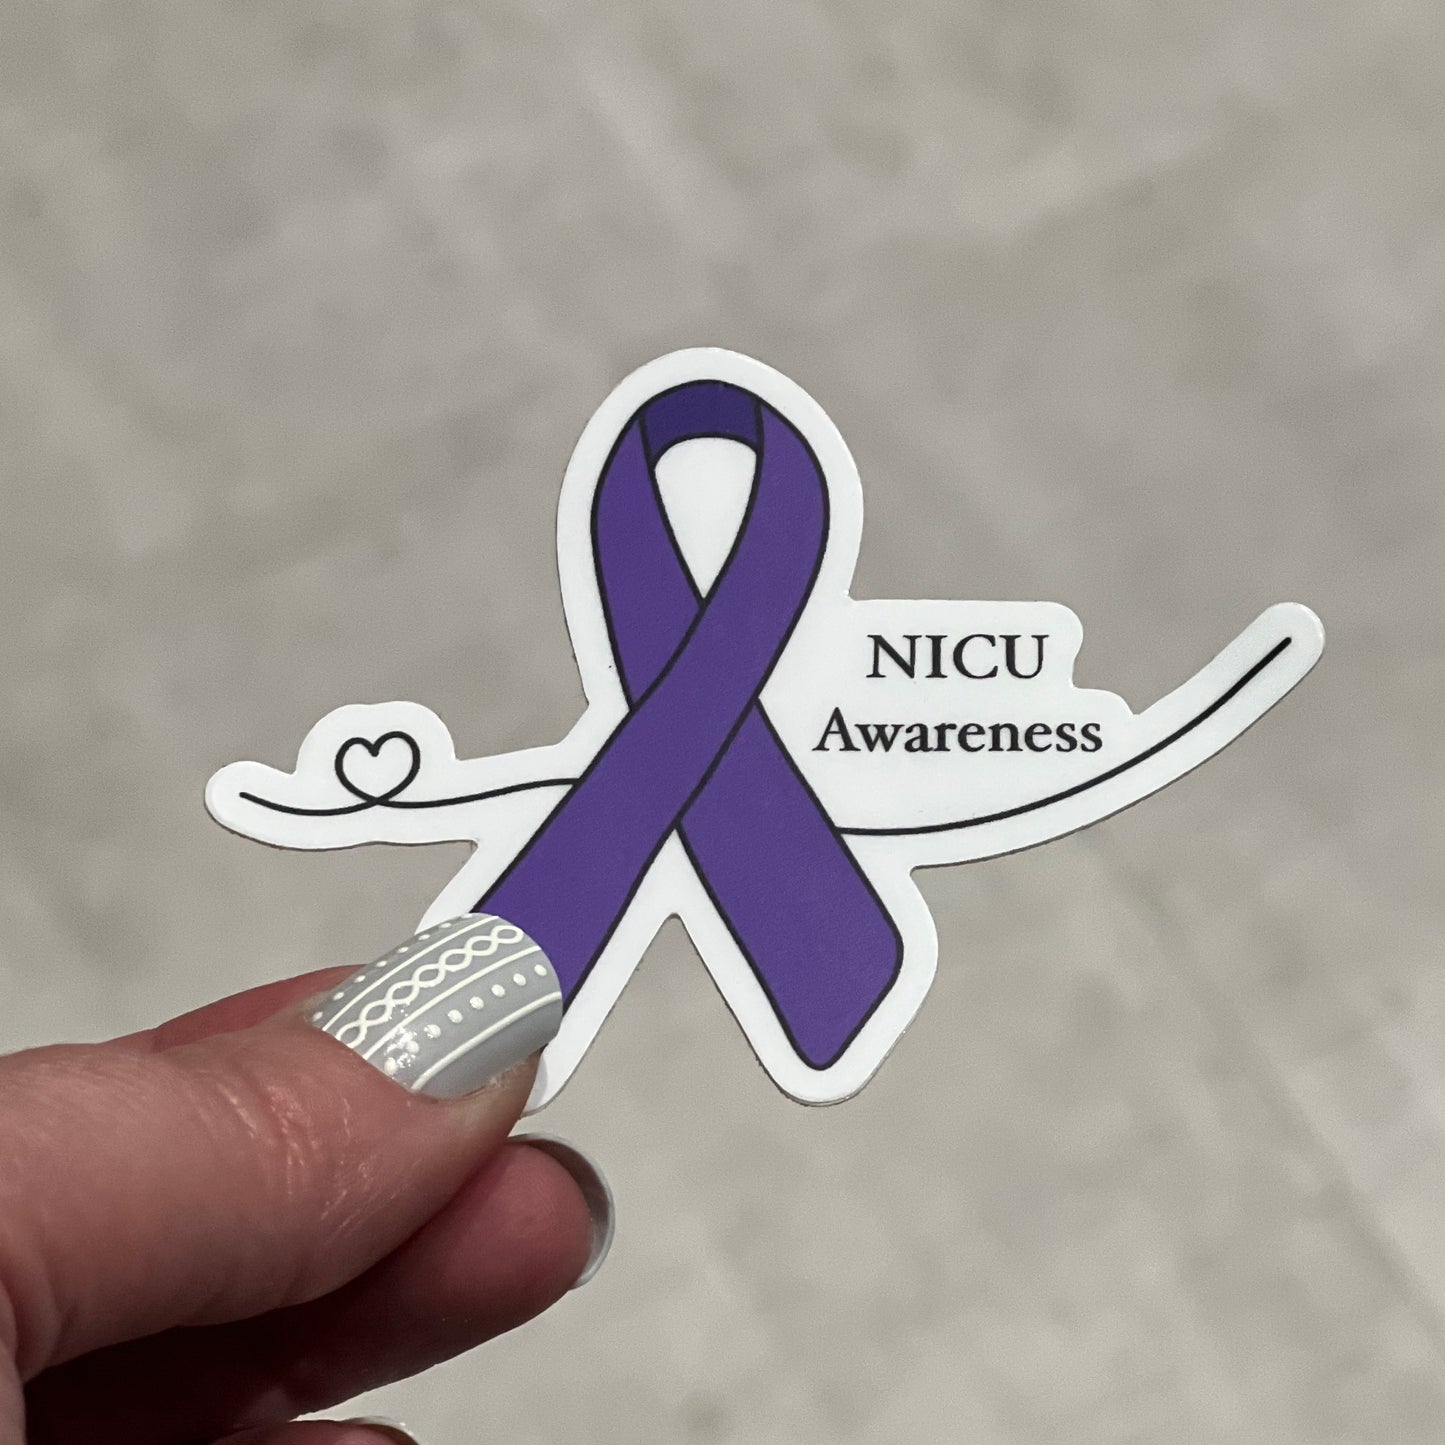 NICU Awareness Sticker